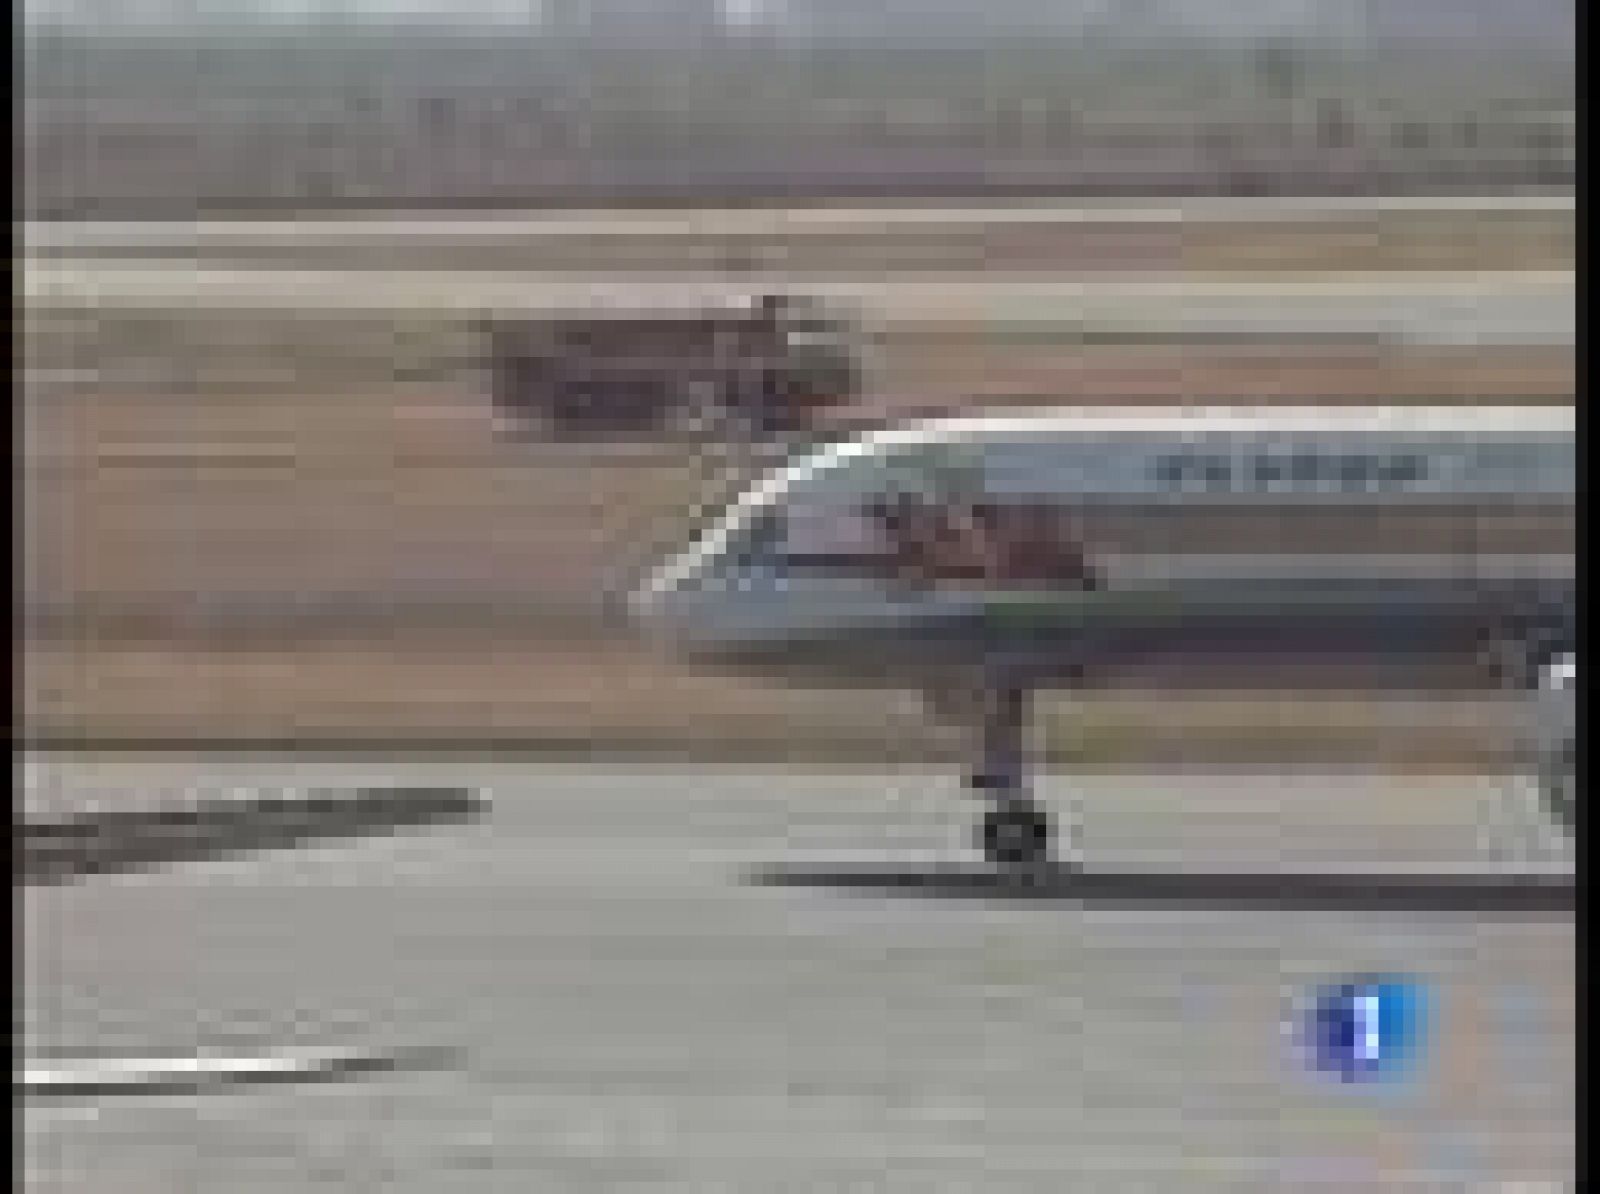 Un avión de las Líneas Aéreas de Etiopía ha caído al mar esta madrugada, nada más despegar del aeropuerto internacional de Beirut. A bordo iban 90 personas. Hay muy pocas esperanzas de que los equipos de rescate localicen algún superviviente. 